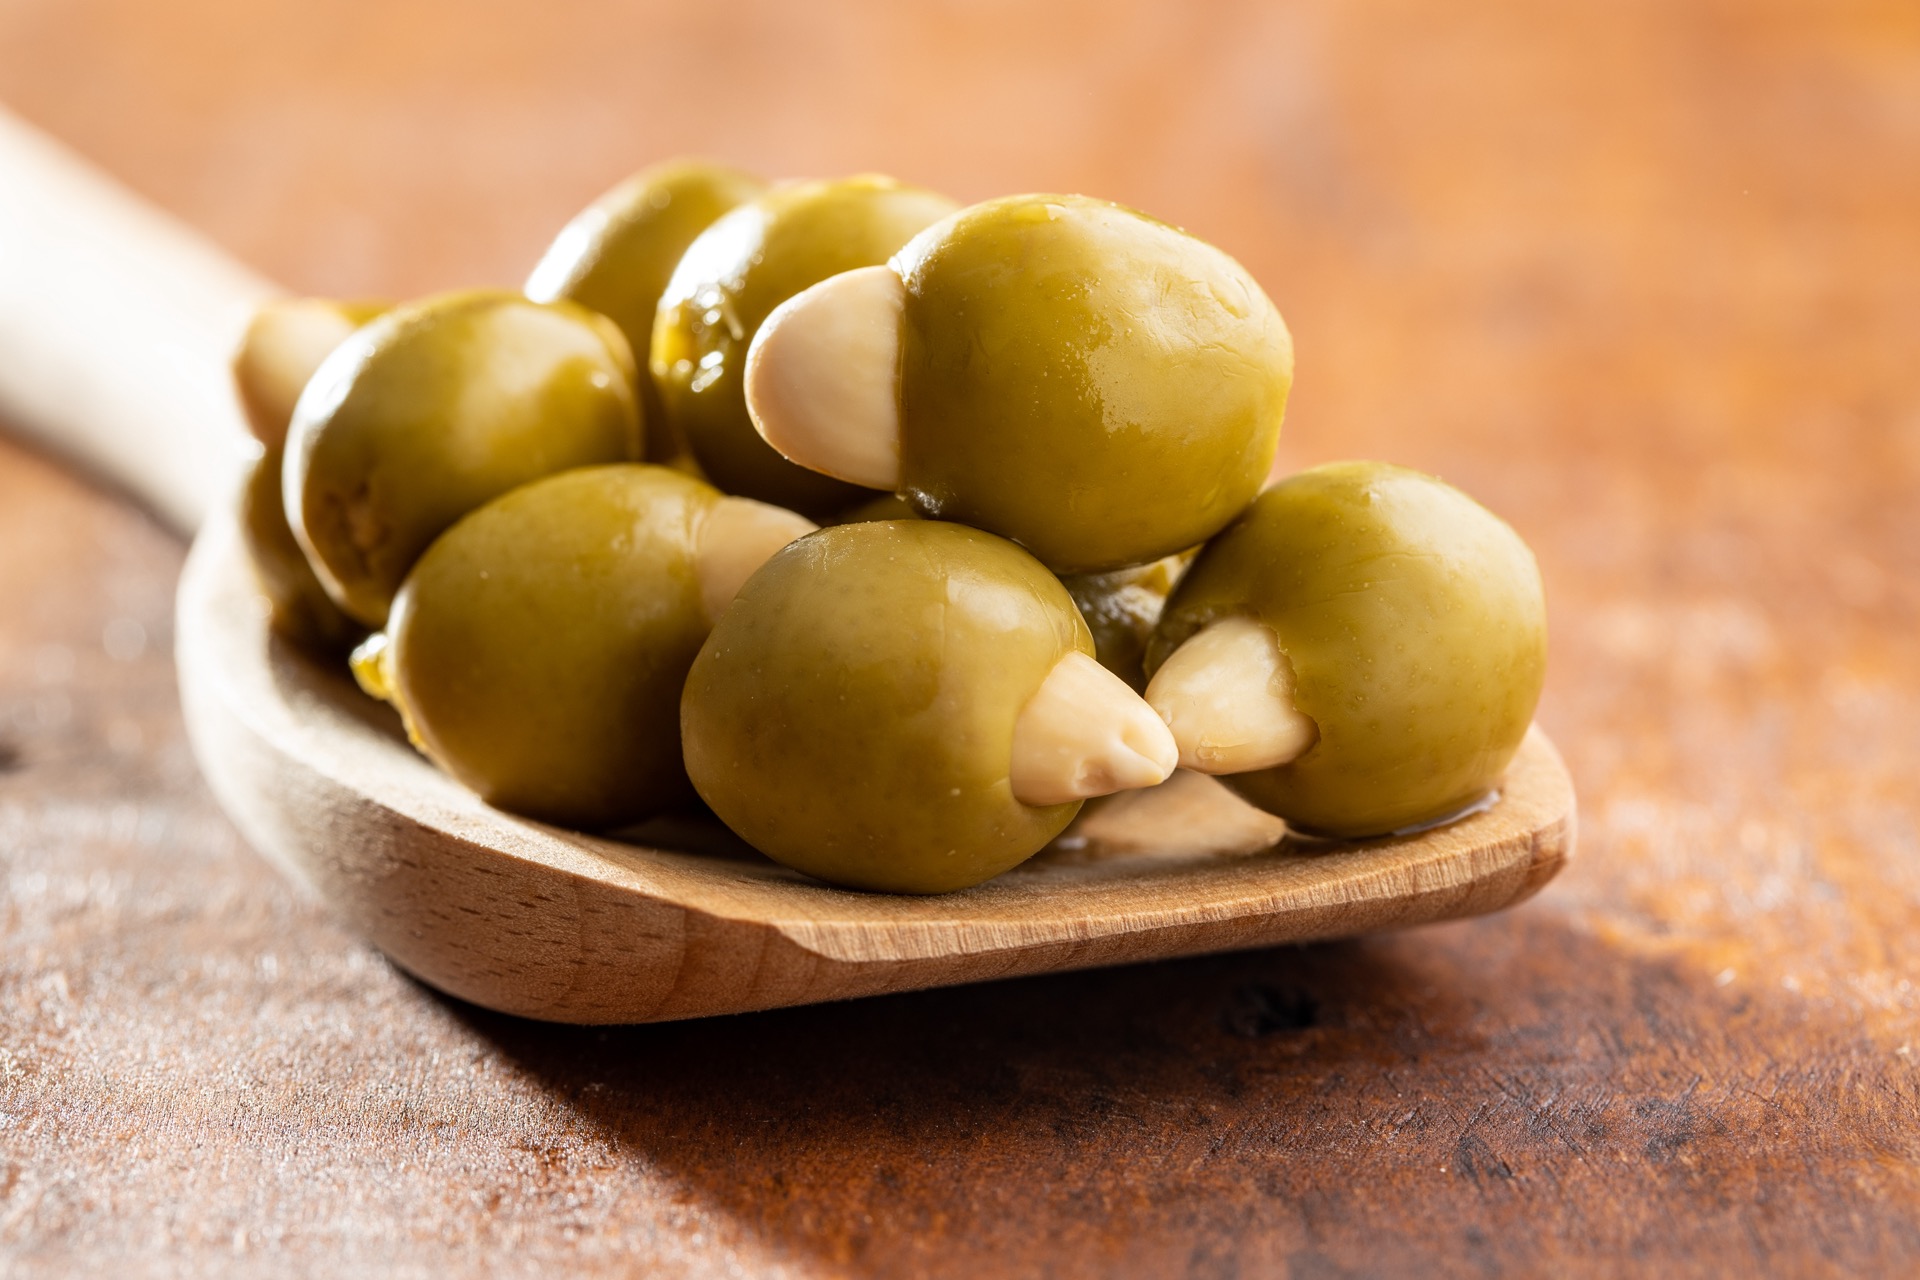 Olive-verdi-snocciolate-ripiene-di-mandorle-su-cucchiaio-di-legno.jpg (355 KB)